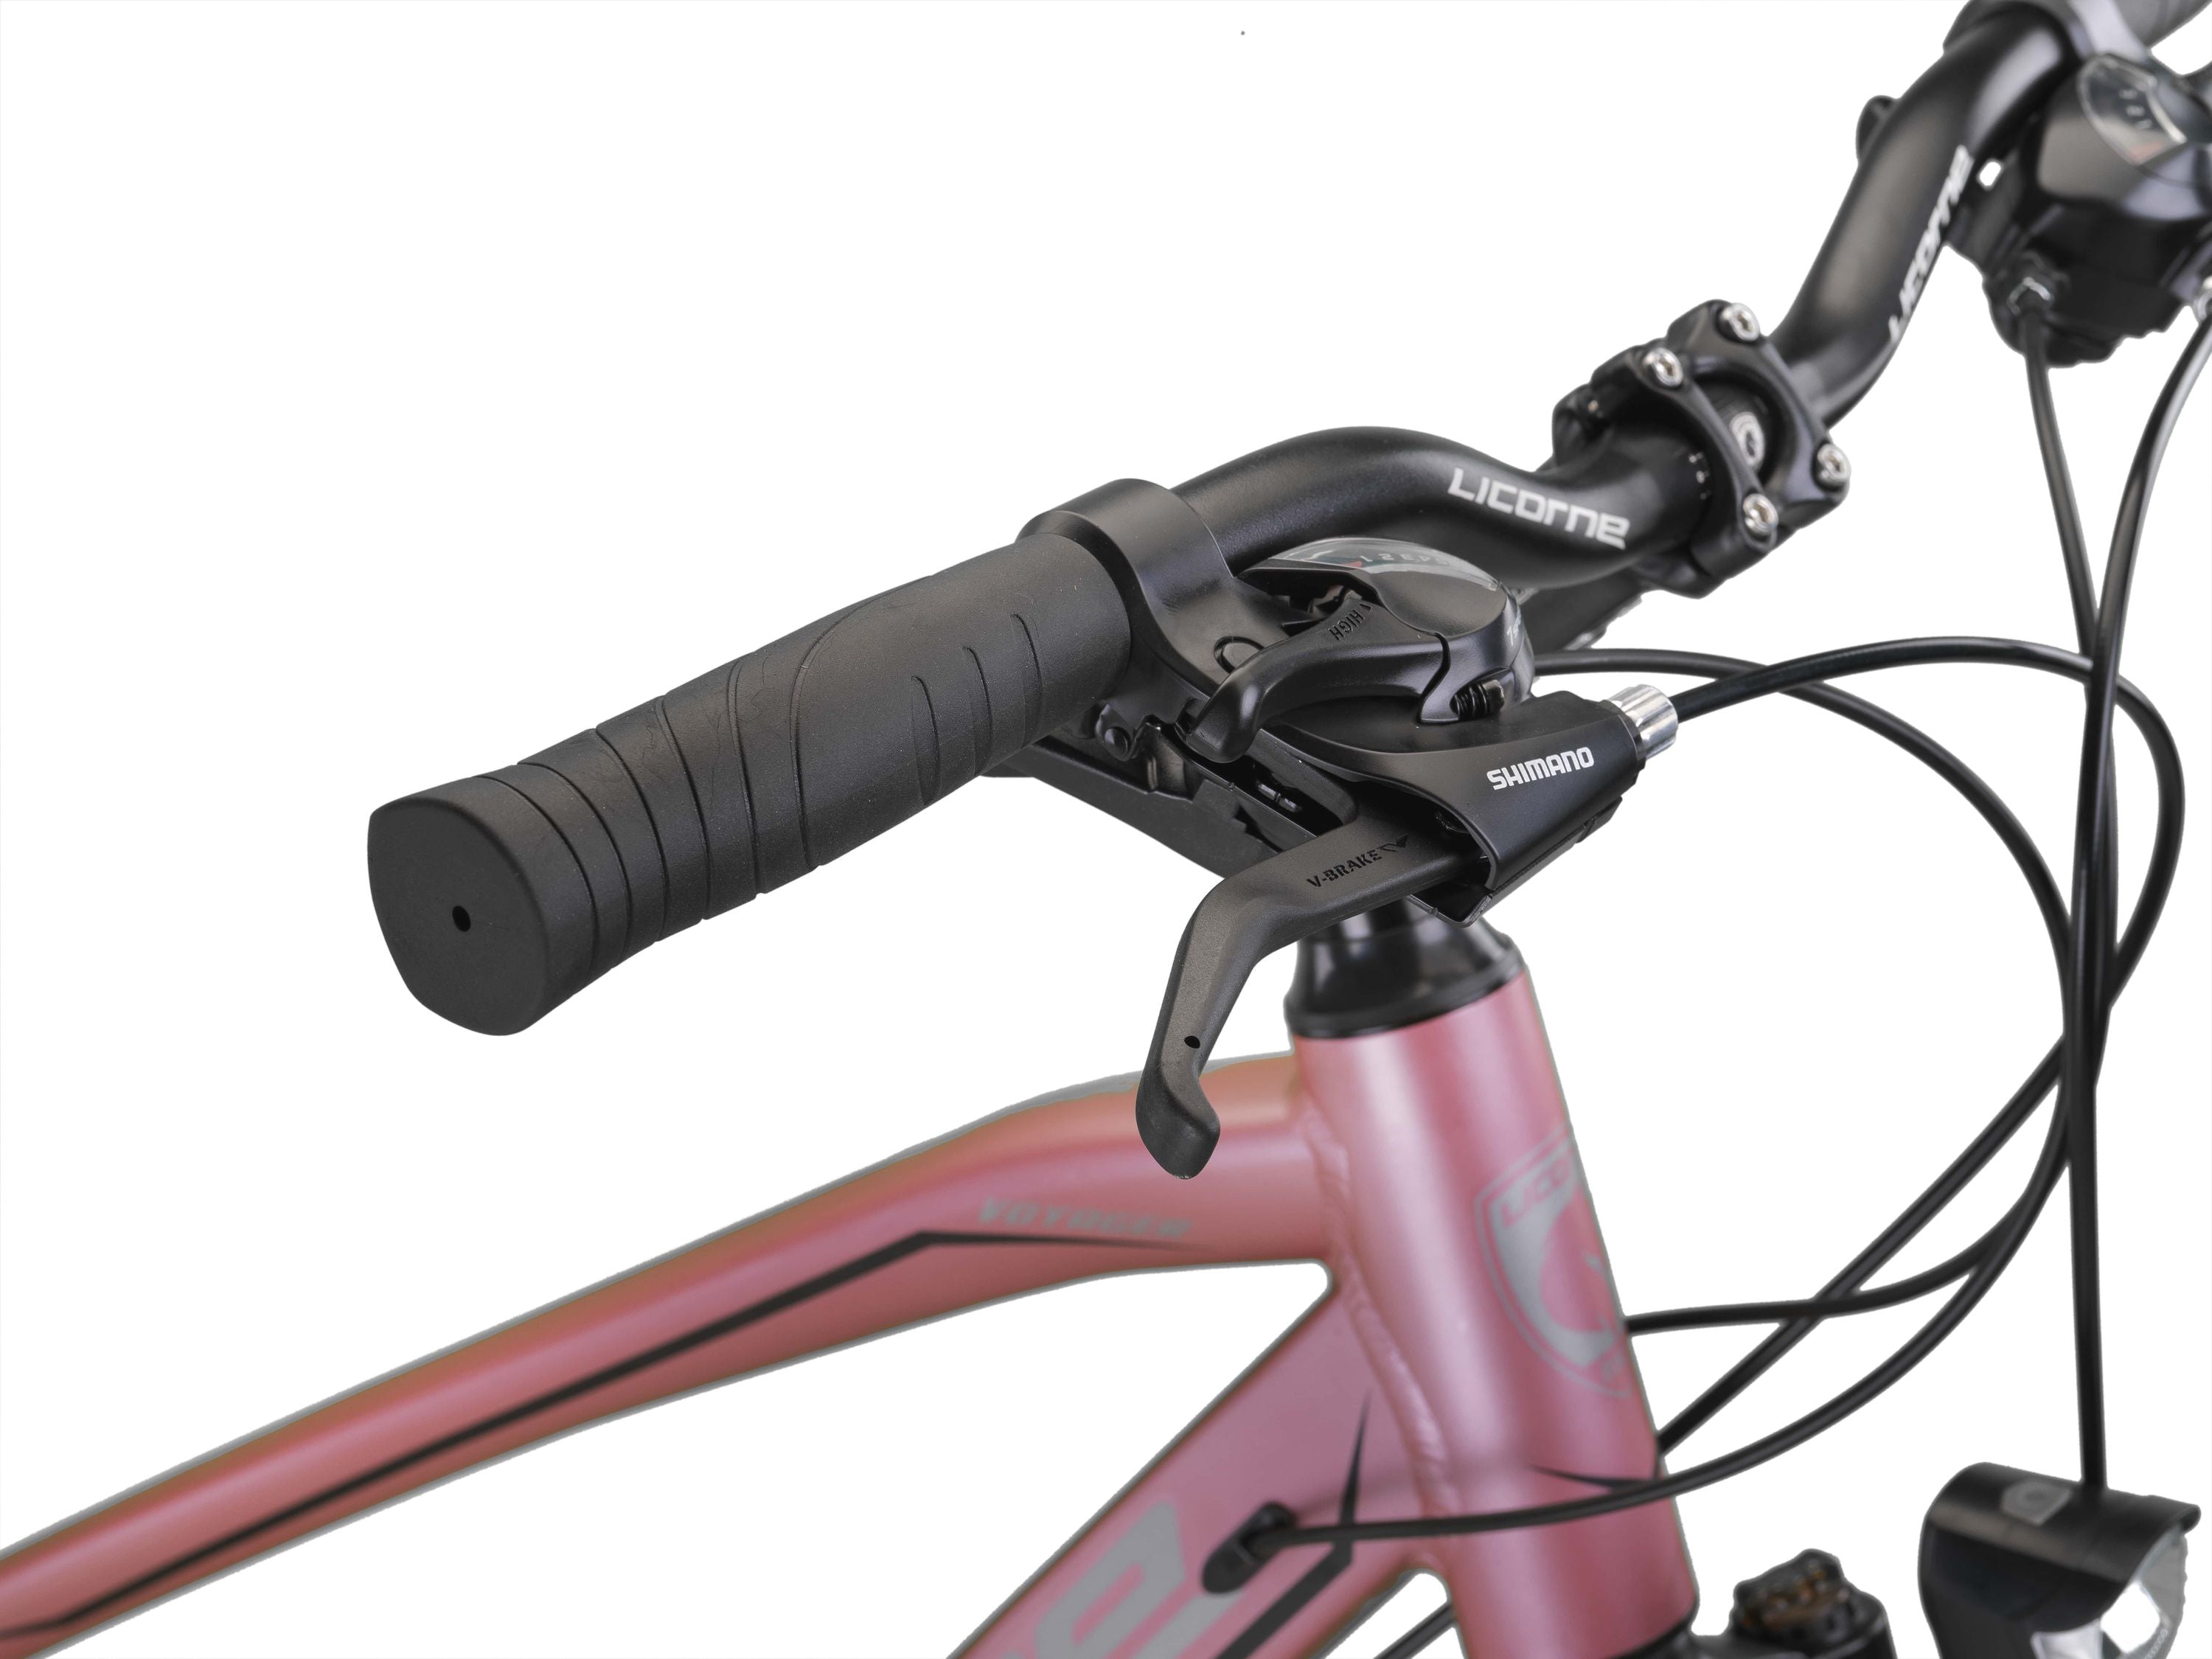 Licorne Bike Premium Voyager Trekking Bike in 28 Zoll - Fahrrad für Jungen, Mädchen, Damen und Herren - 21 Gang-Schaltung - Mountainbike - Crossbike